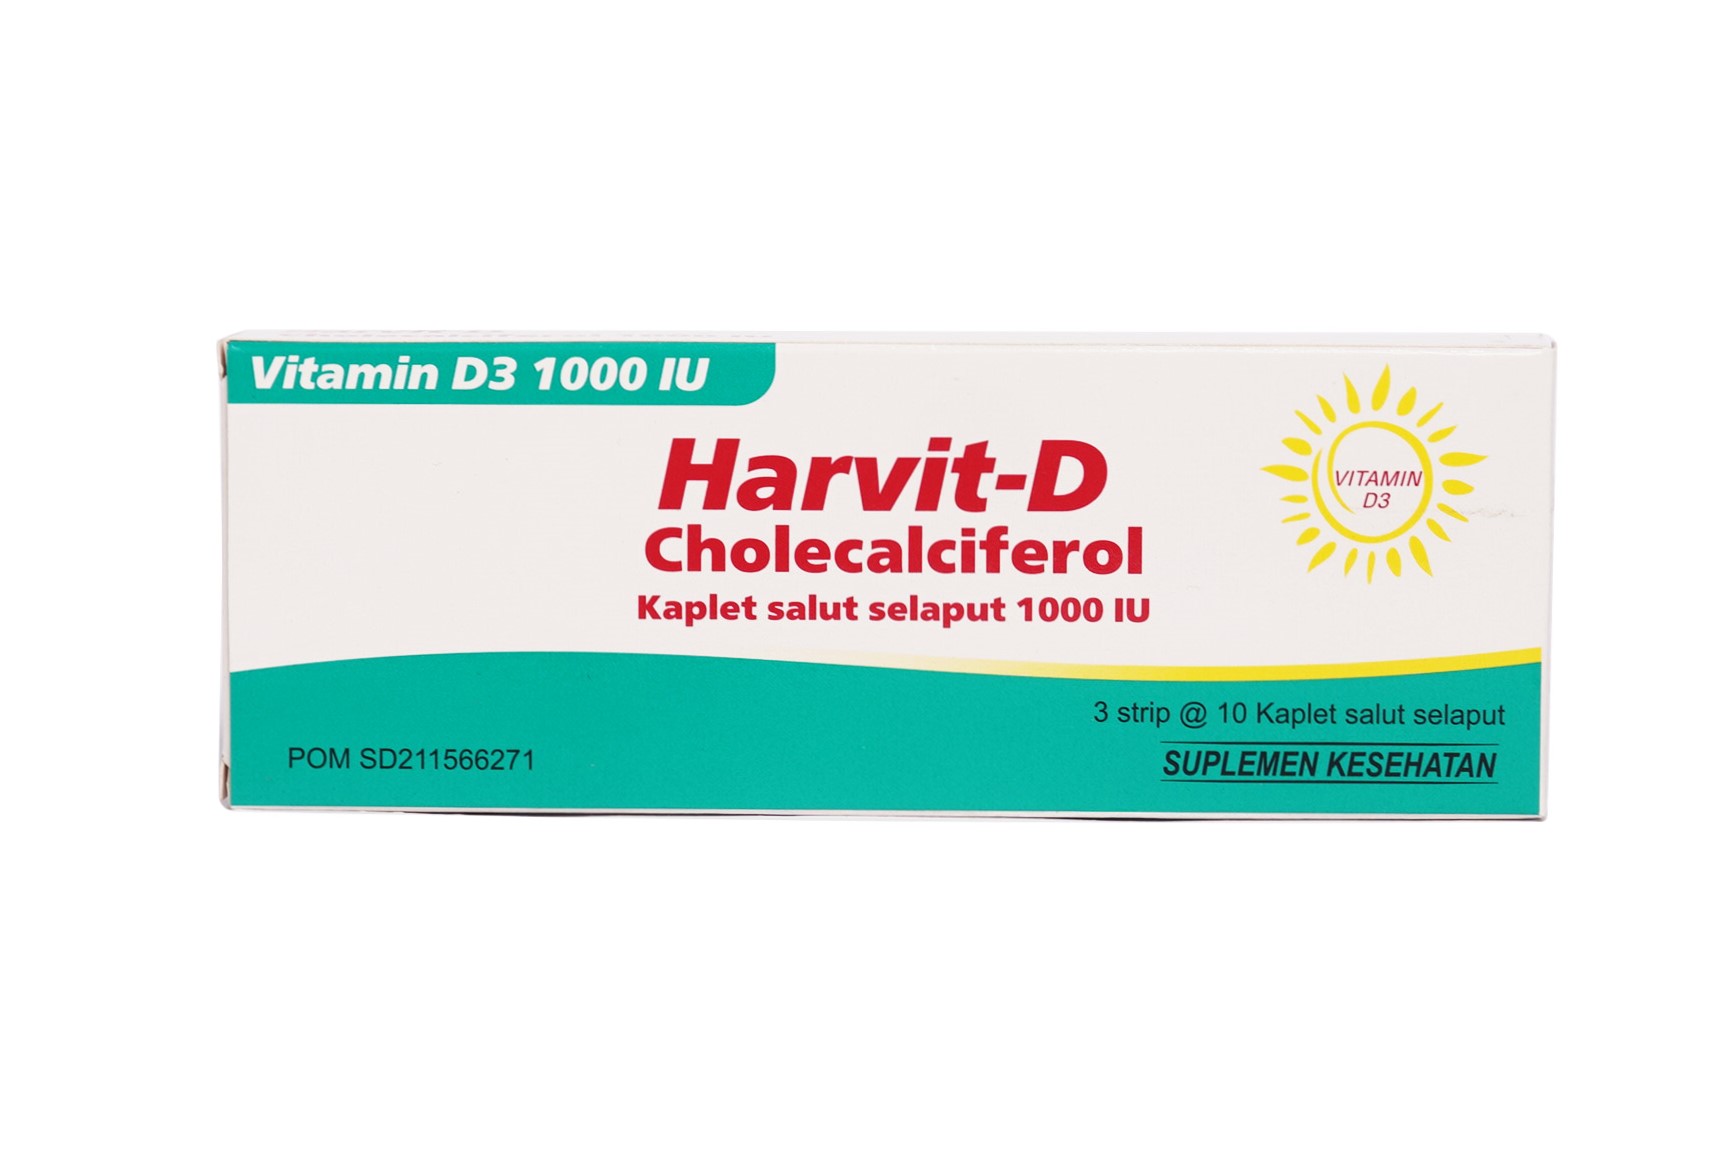 Harvit D 1000 IU